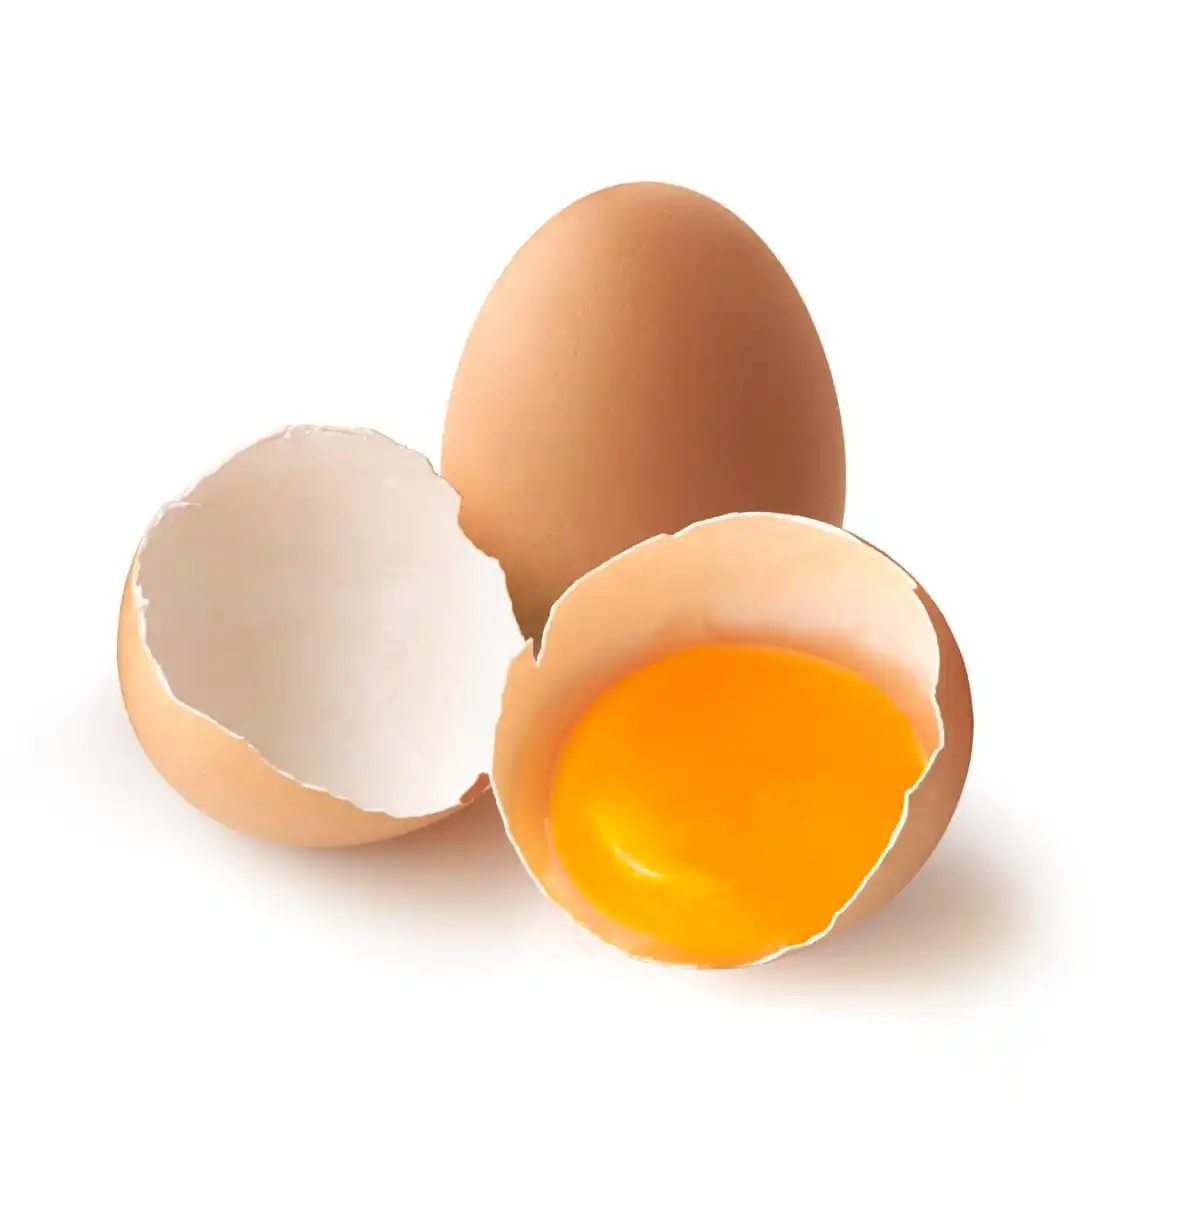 Satılık organik taze tavuk yumurta döllenmiş kuluçka